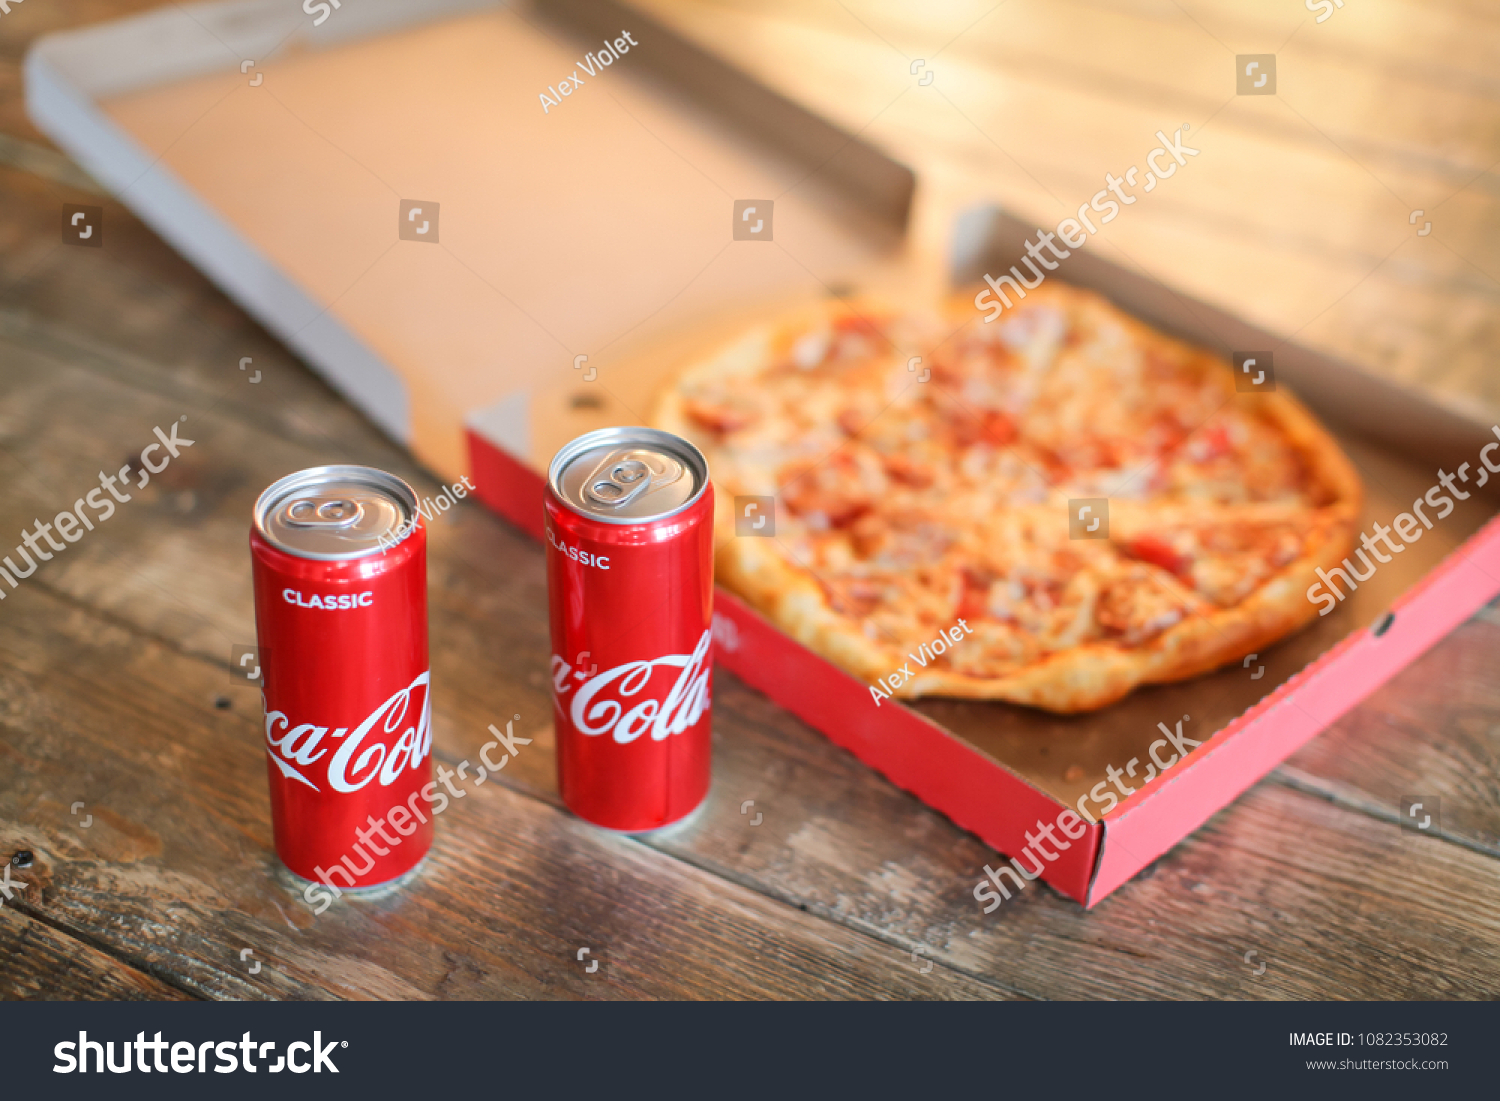 фотография пиццы и колы фото 29